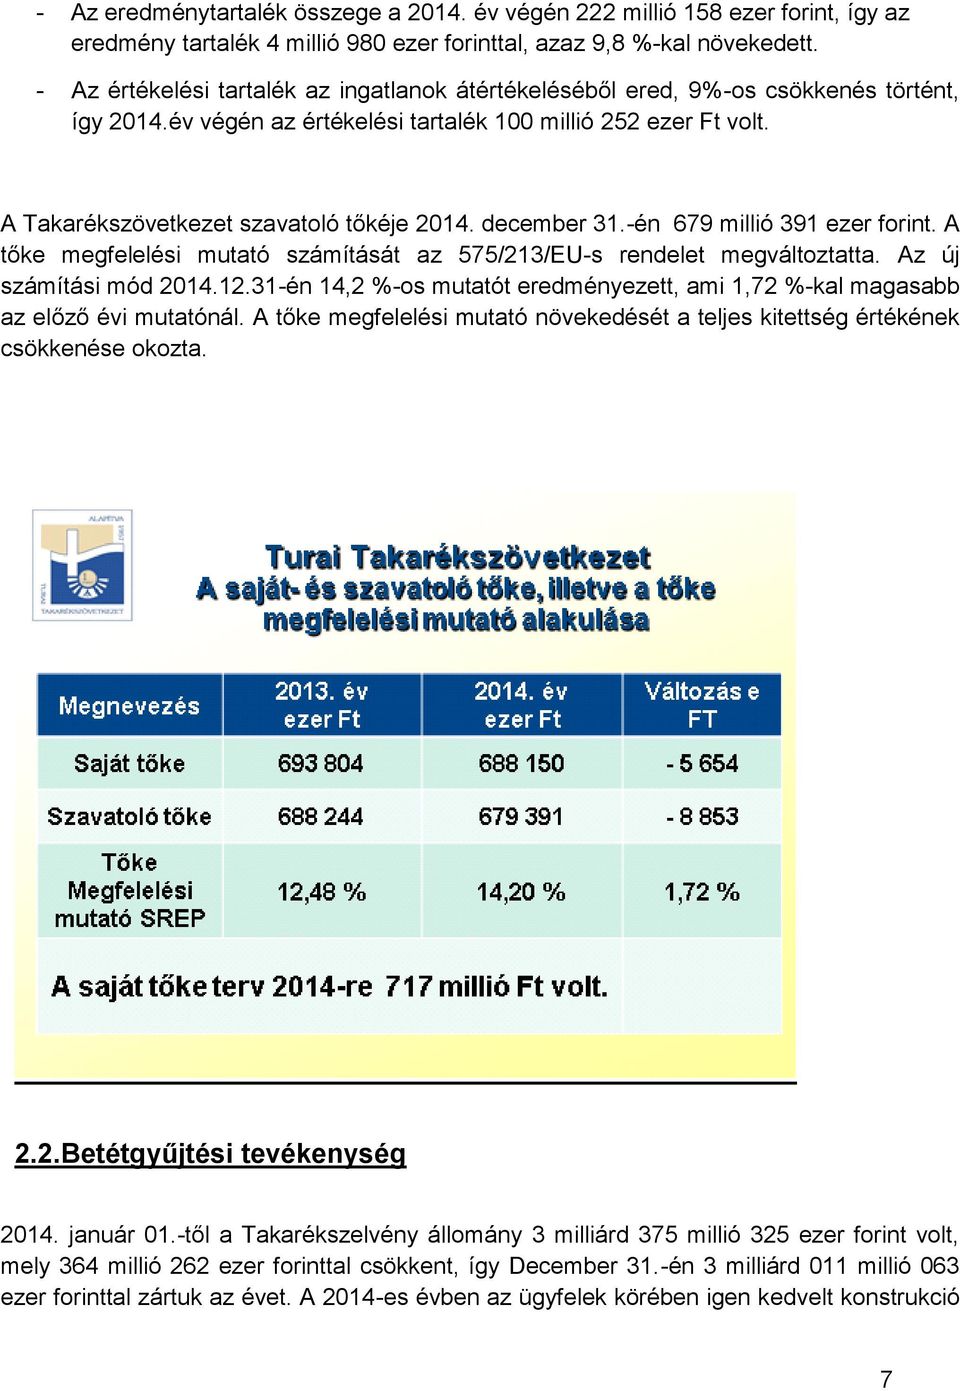 december 31.-én 679 millió 391 ezer forint. A tőke megfelelési mutató számítását az 575/213/EU-s rendelet megváltoztatta. Az új számítási mód 2014.12.